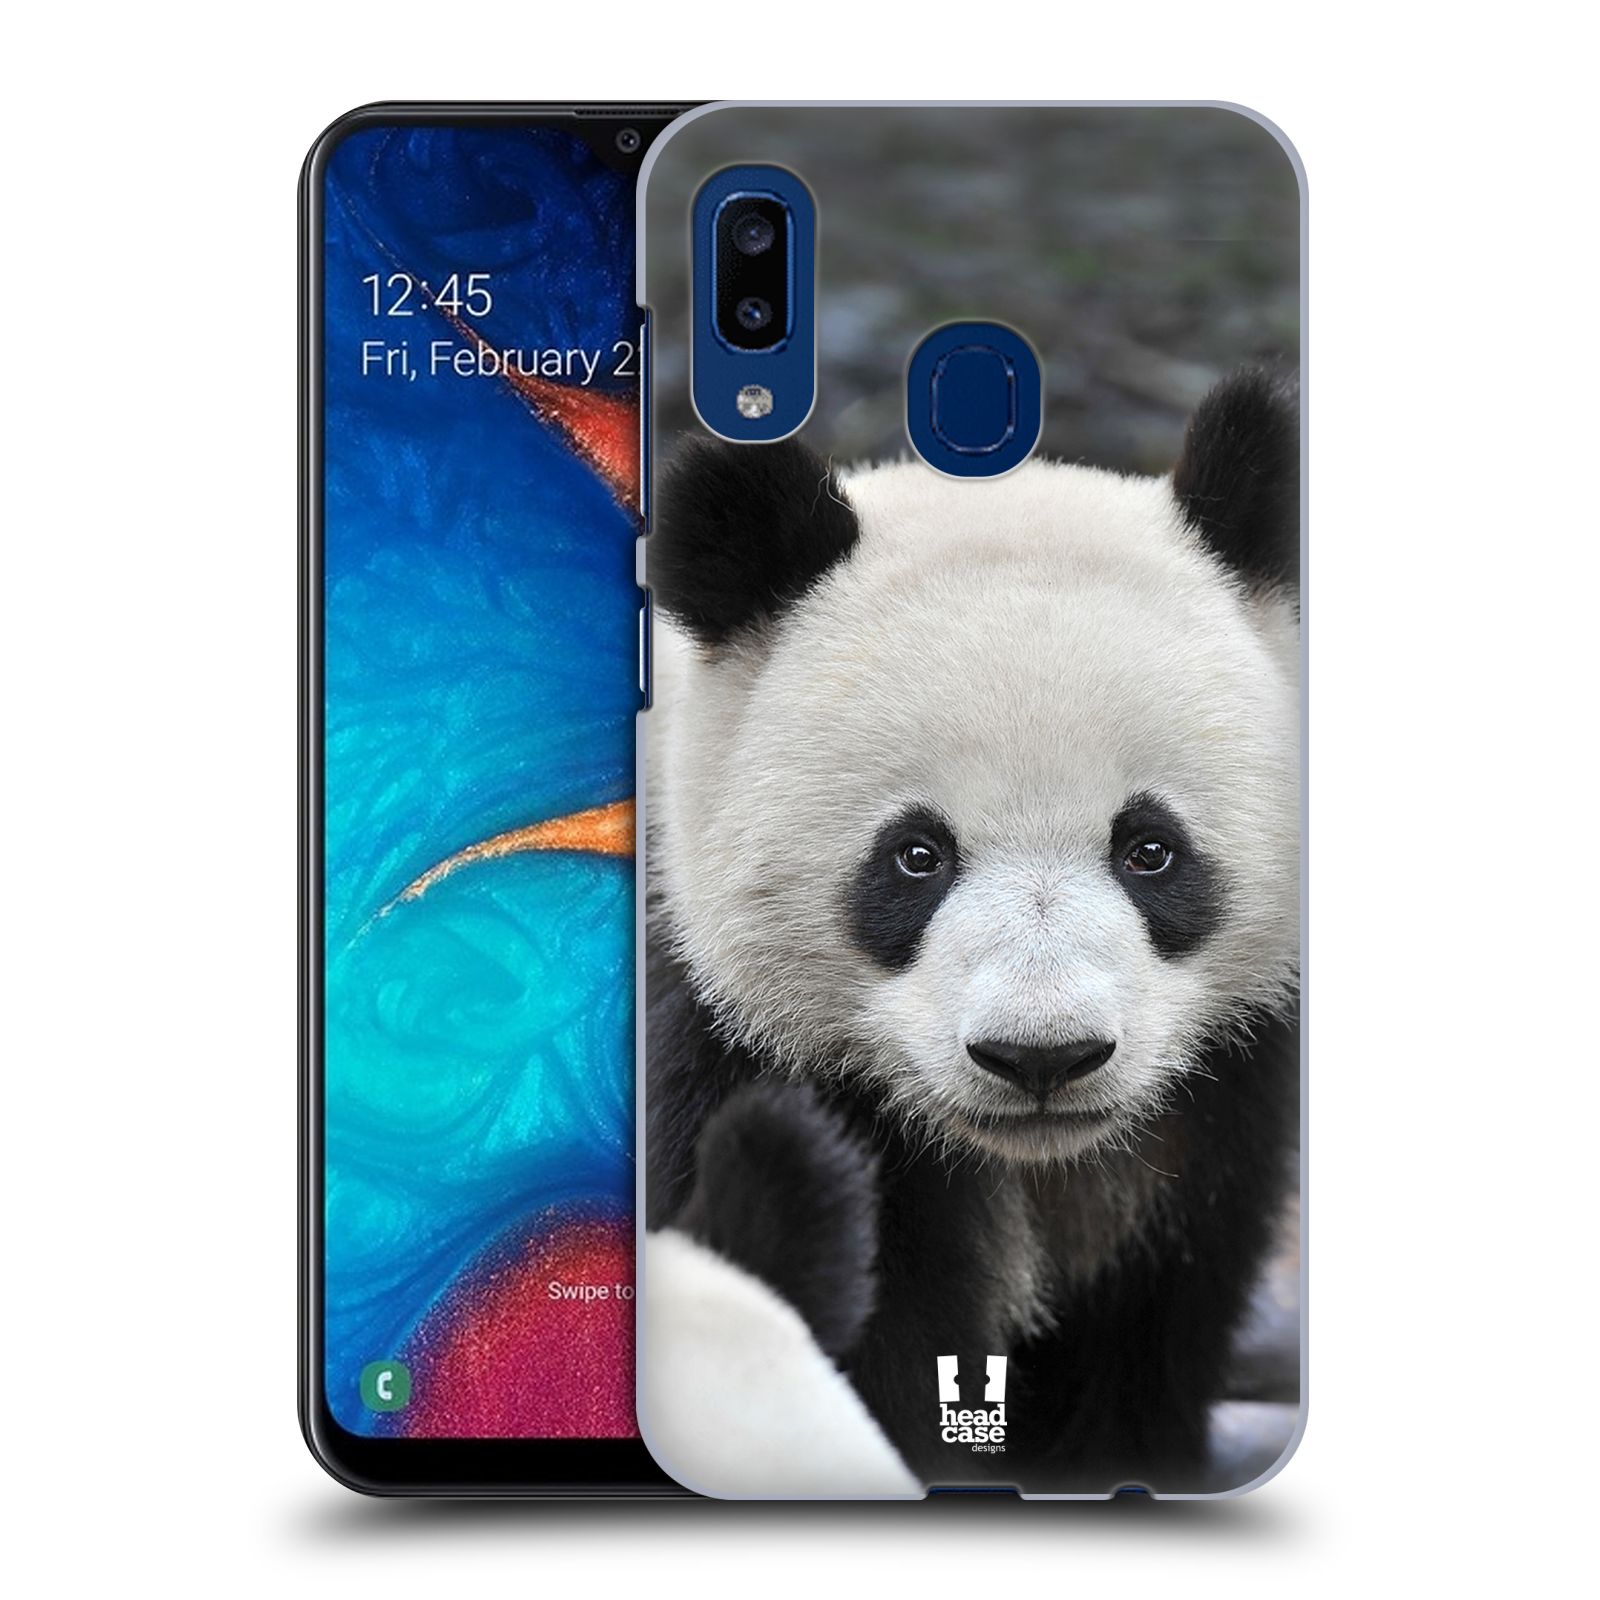 Zadní obal pro mobil Samsung Galaxy A20 - HEAD CASE - Svět zvířat medvěd panda